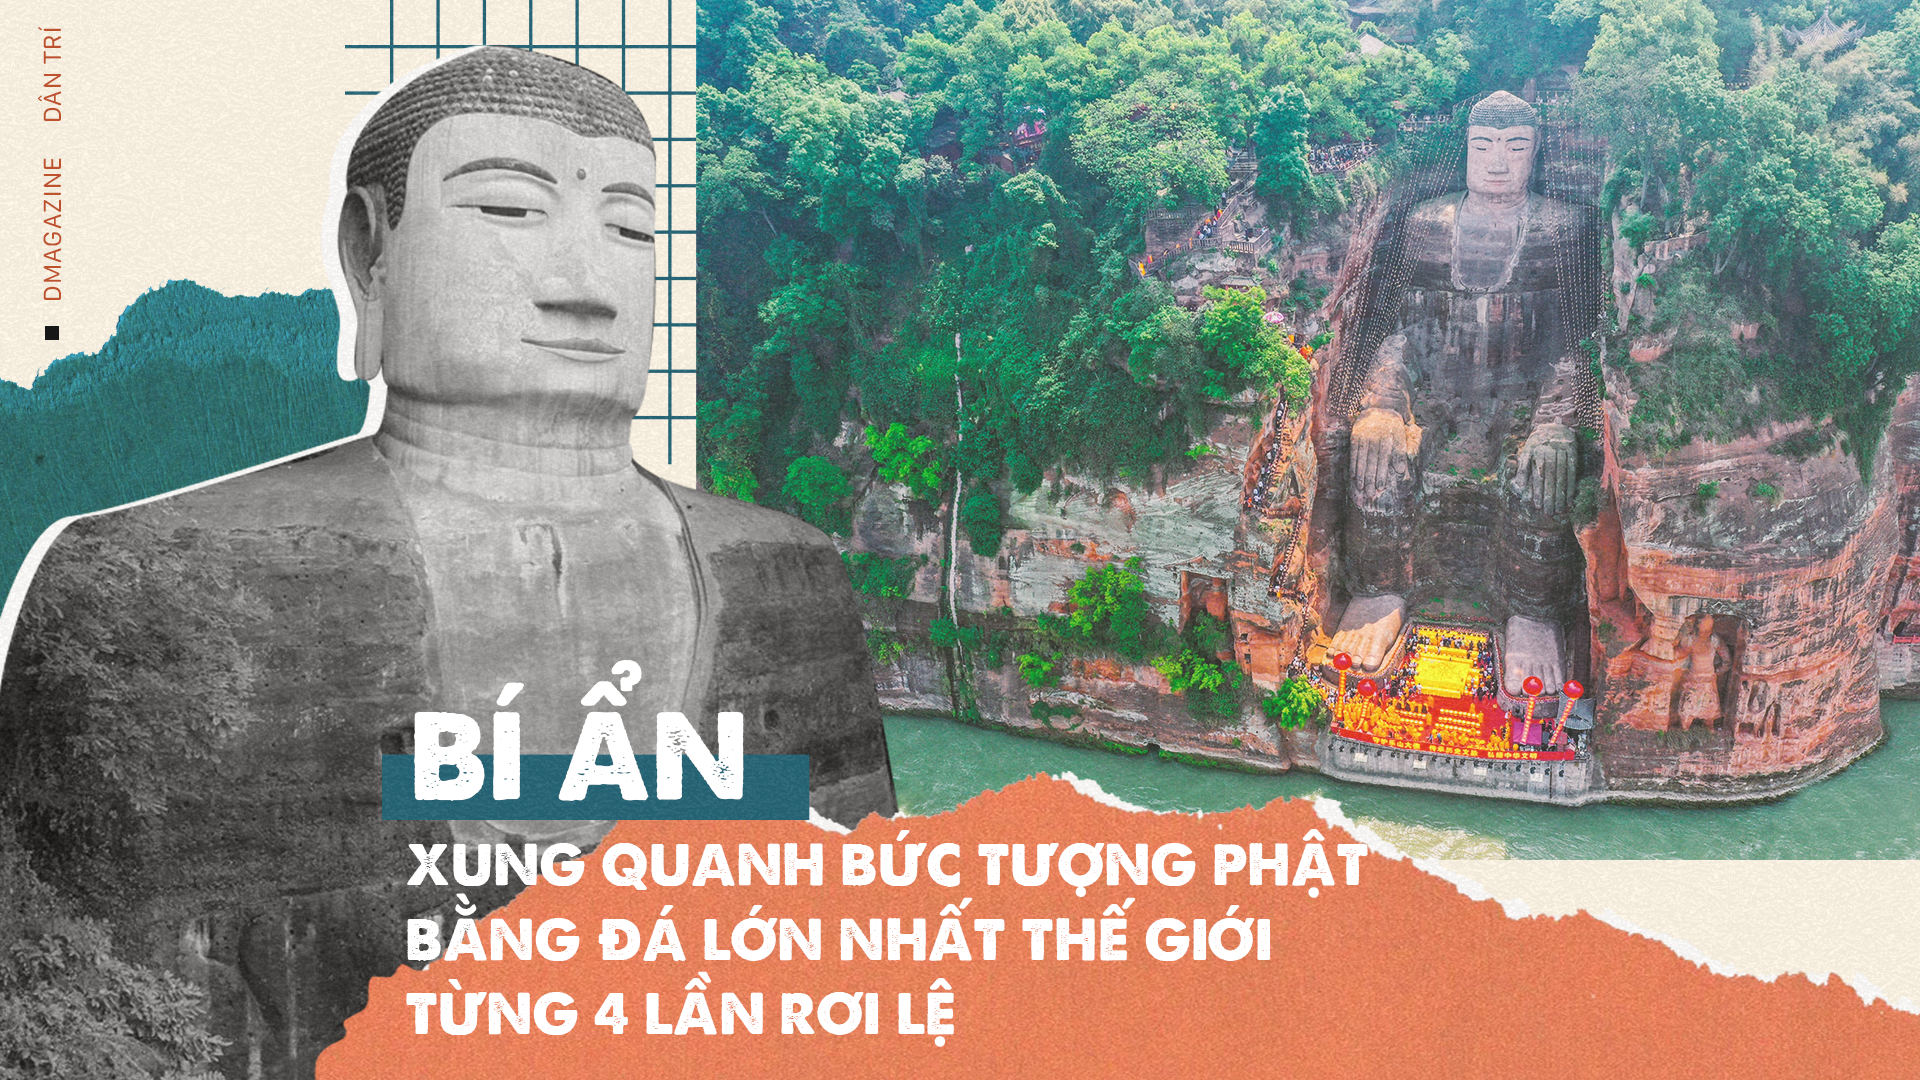 Một bức tượng Phật bằng đá cổ kính, đẹp mắt và lấp lánh sẽ khiến bất kỳ ai cũng trầm trồ thán phục. Trong năm 2024, nghệ thuật đá mỹ nghệ đã phát triển mạnh mẽ tại Việt Nam. Các nghệ nhân tại đây đã tạo ra những tác phẩm đá tuyệt vời và được người dân ưa chuộng.